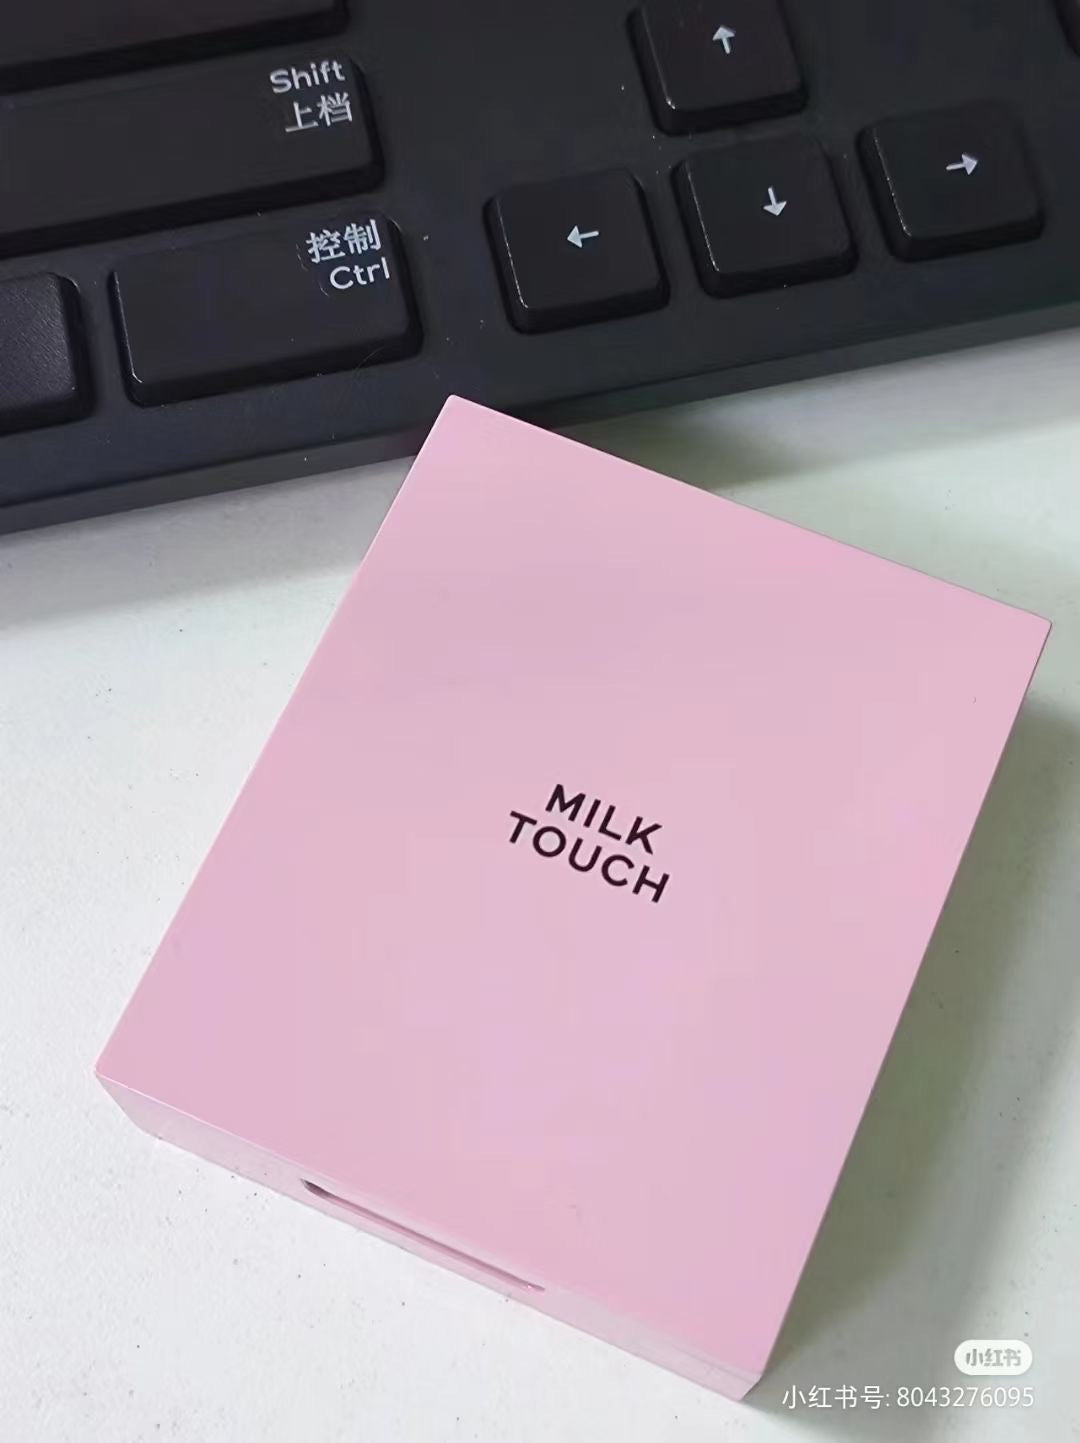 Milk Touch 粉饼– Peach Bella